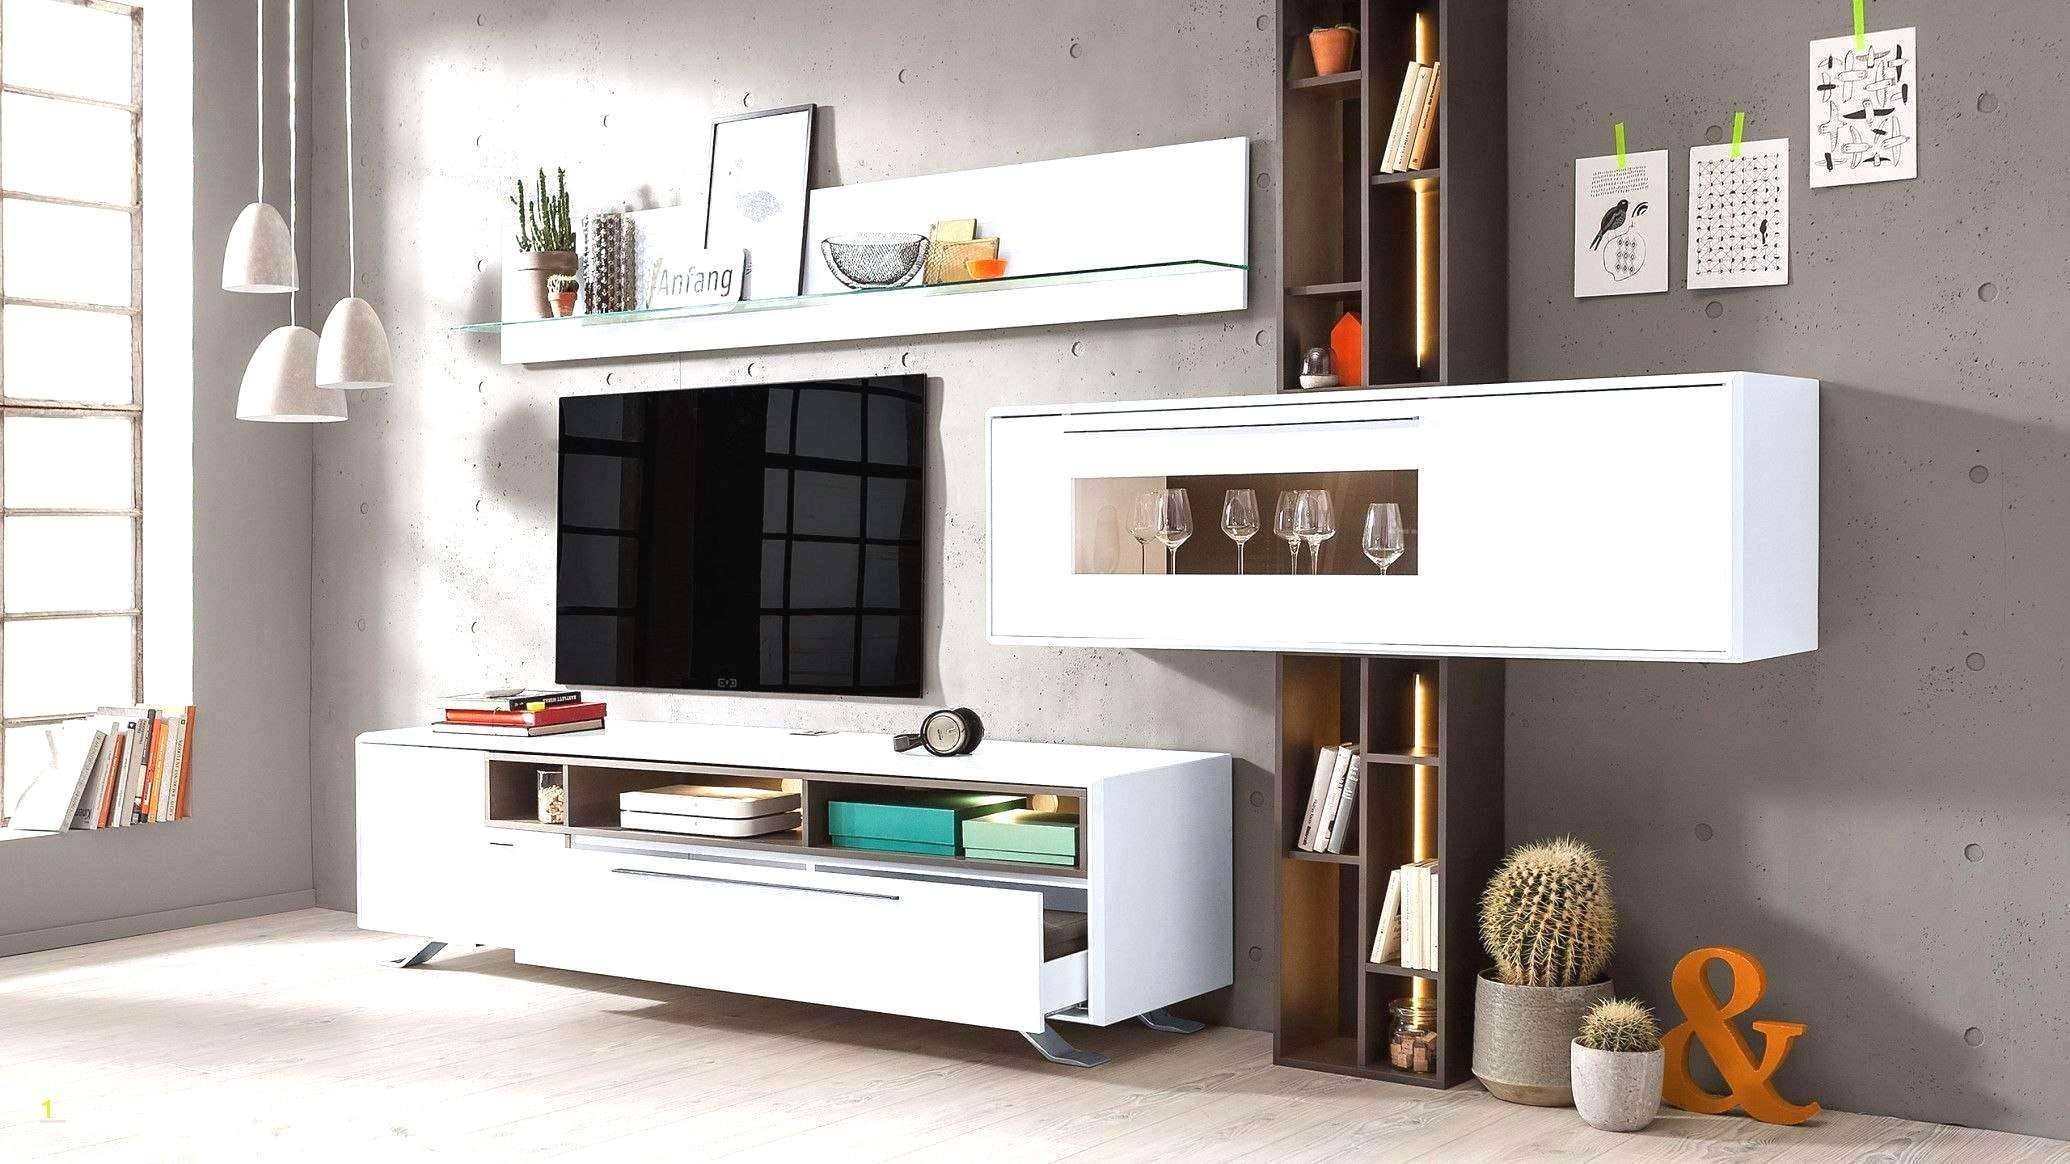 Dekoration Selber Machen Einzigartig Luxury Deko Ideen Selbermachen Wohnzimmer Concept